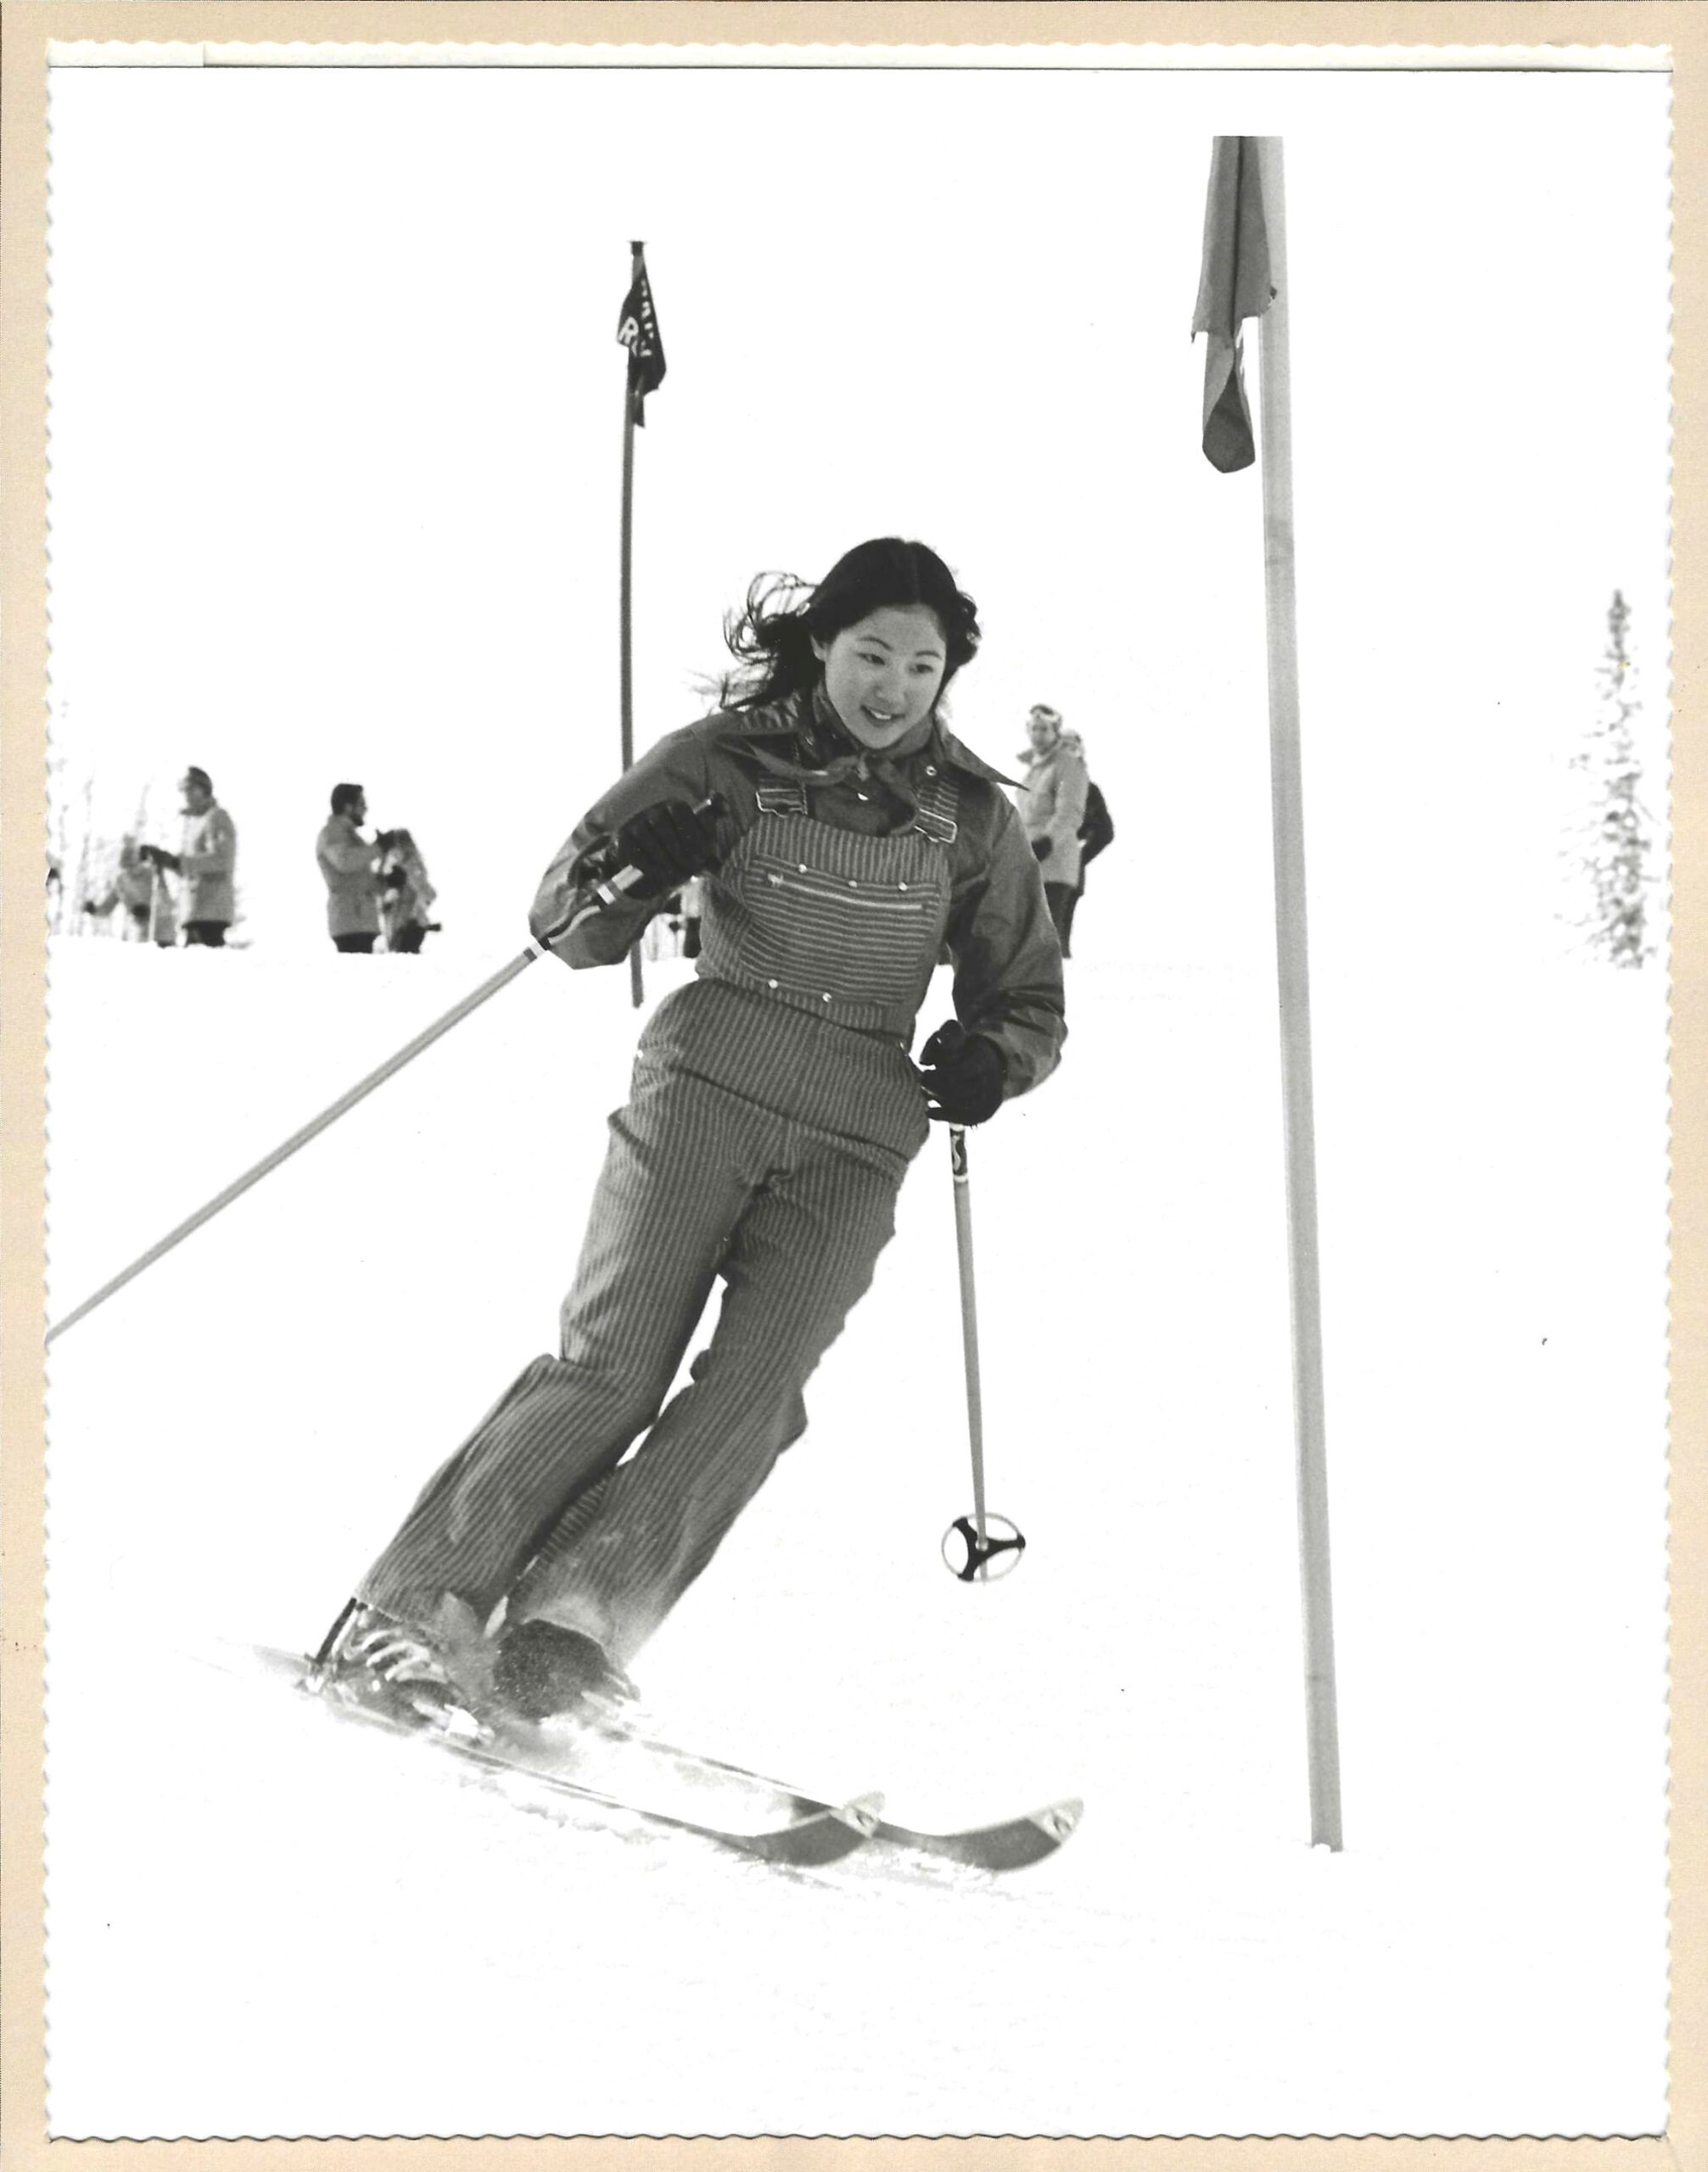 Photo of Mimura skiing.